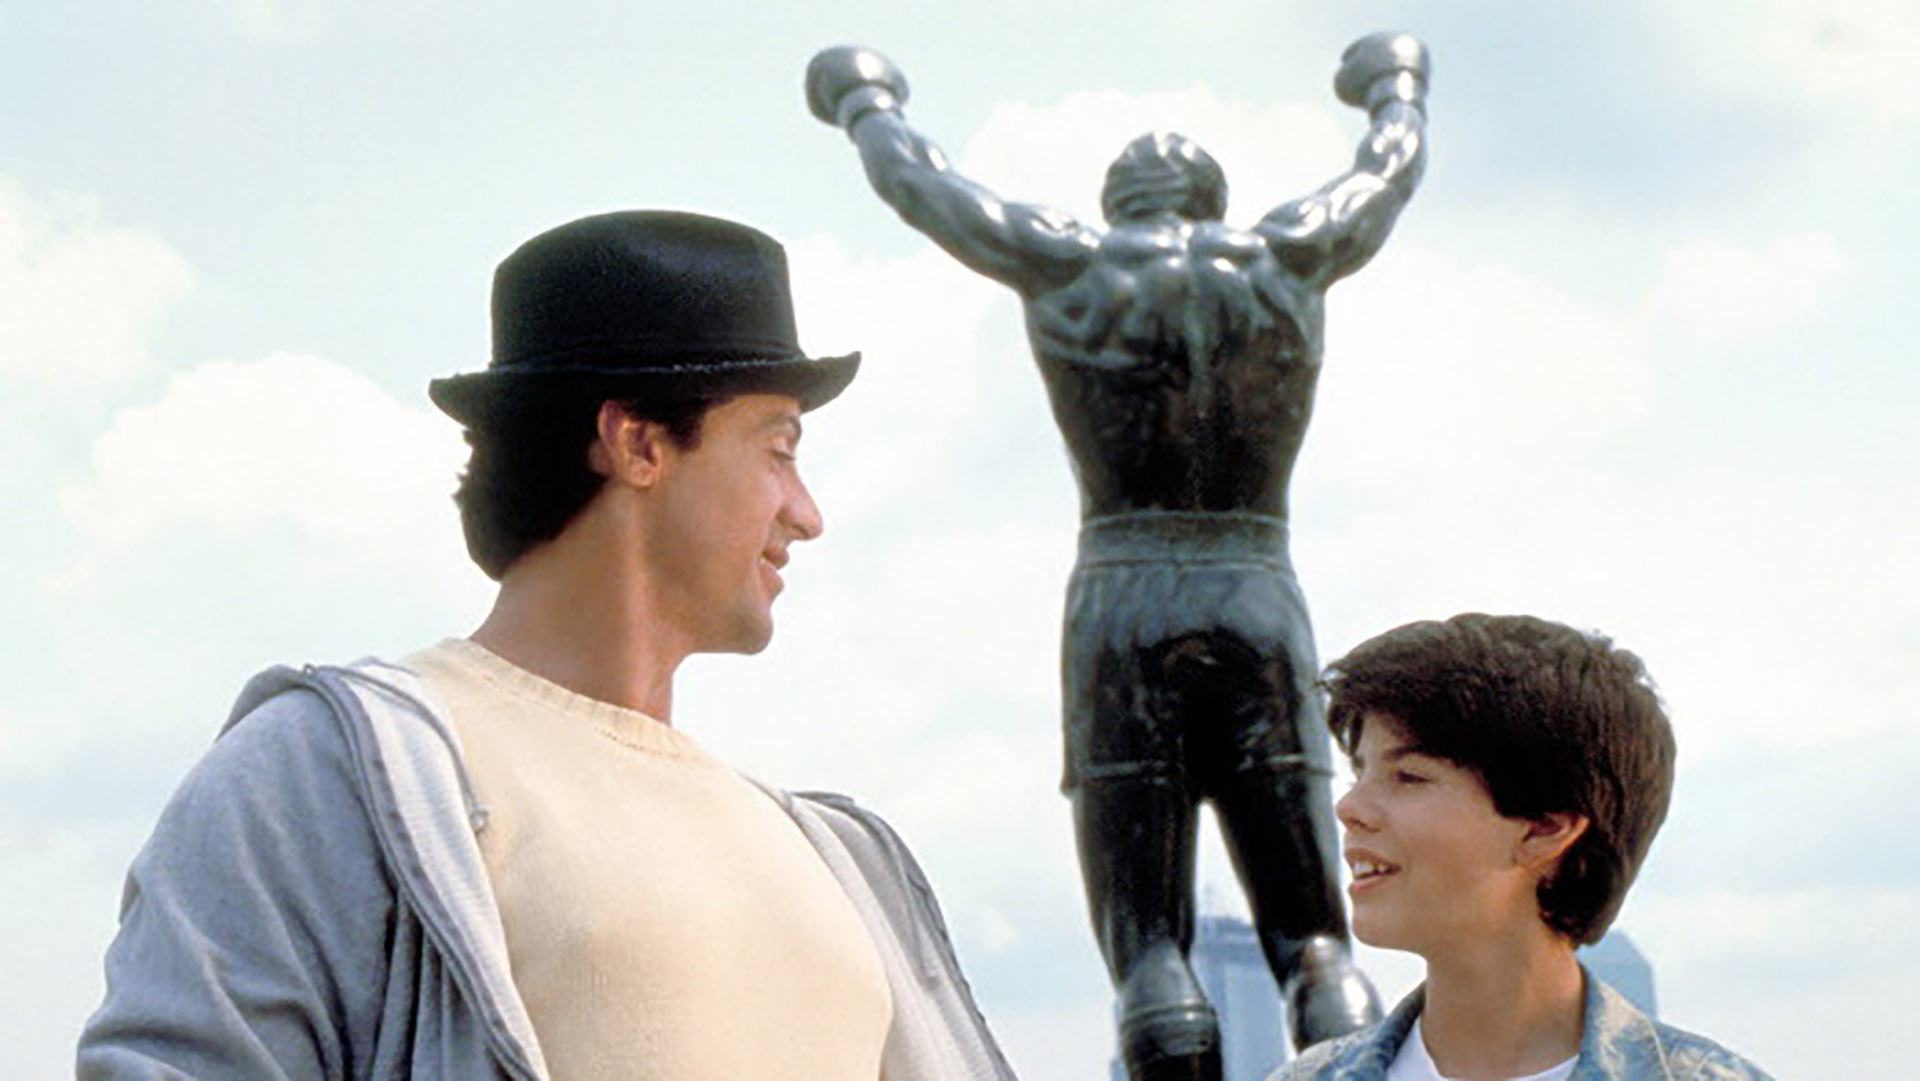 Stallone quería retirar una estatua de su personaje de Rocky Balboa. Al ser una gran fan de la saga de "Rocky", Adele amenazó con no comprar la casa si Stallone se llevaba la estatua